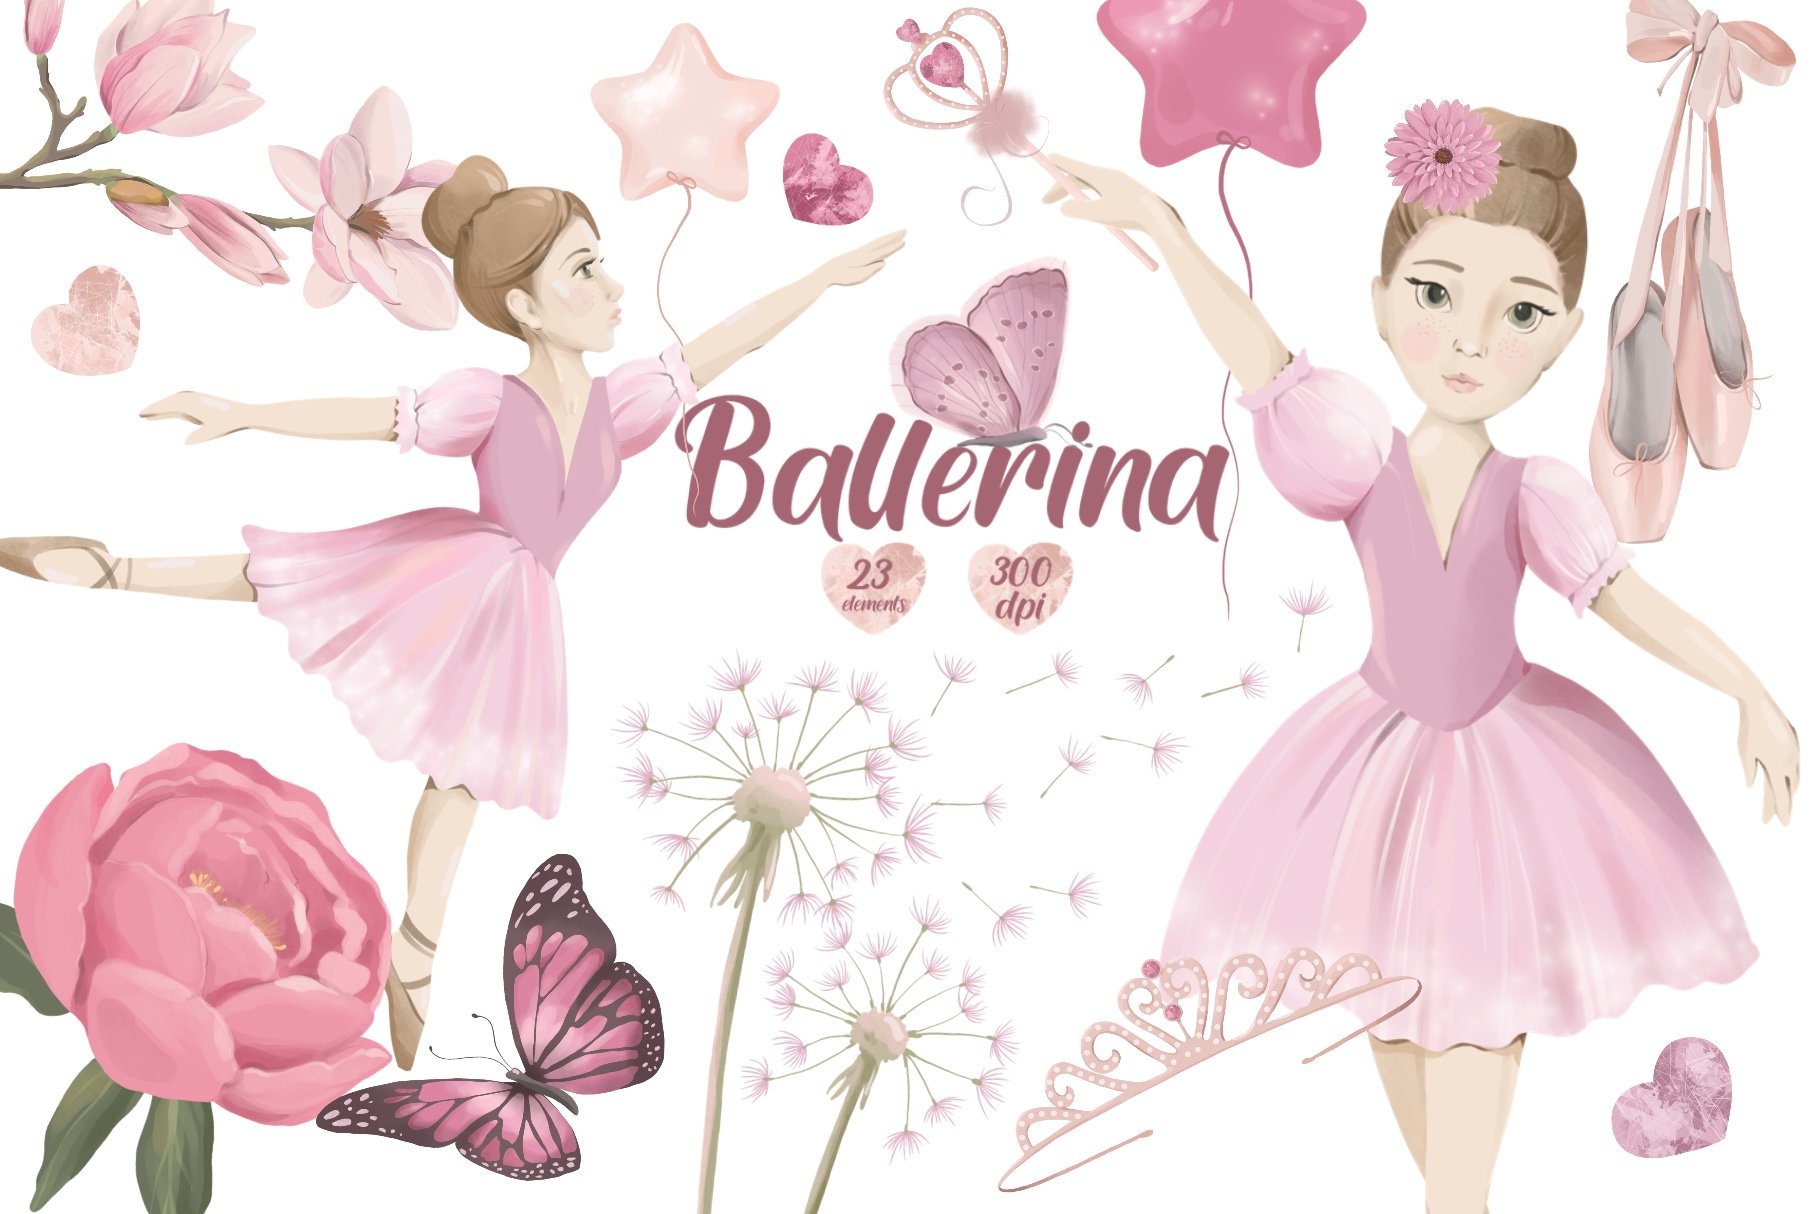 ballerina wallpaper for kids